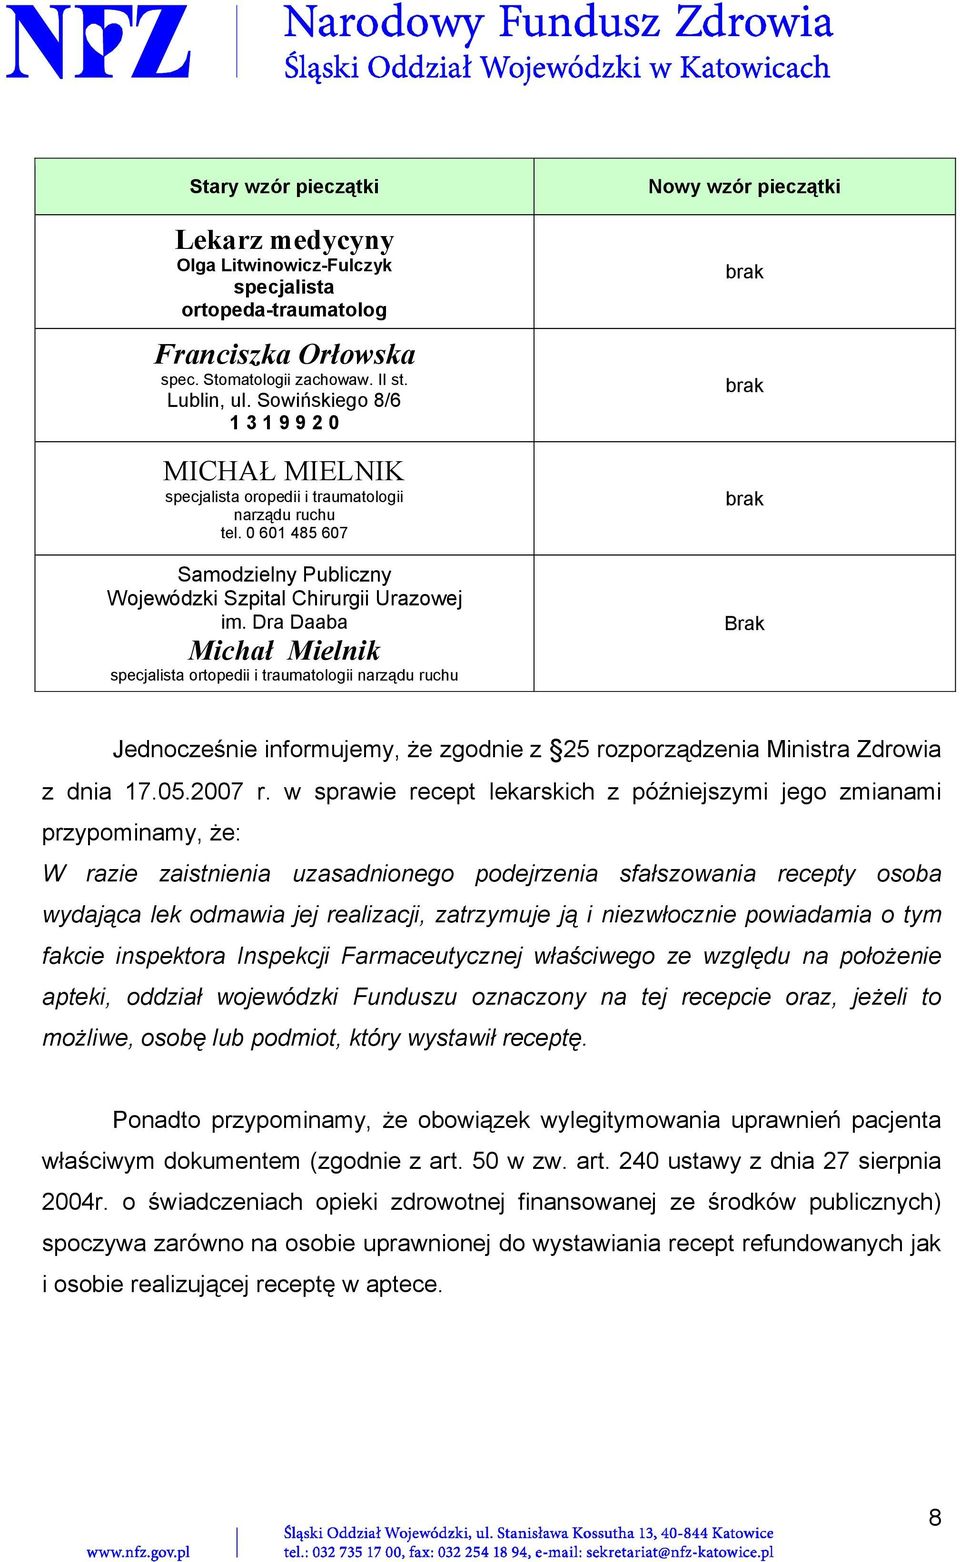 Dra Daaba Michał Mielnik specjalista ortopedii i traumatologii narządu ruchu Nowy wzór pieczątki Brak Jednocześnie informujemy, że zgodnie z 25 rozporządzenia Ministra Zdrowia z dnia 17.05.2007 r.